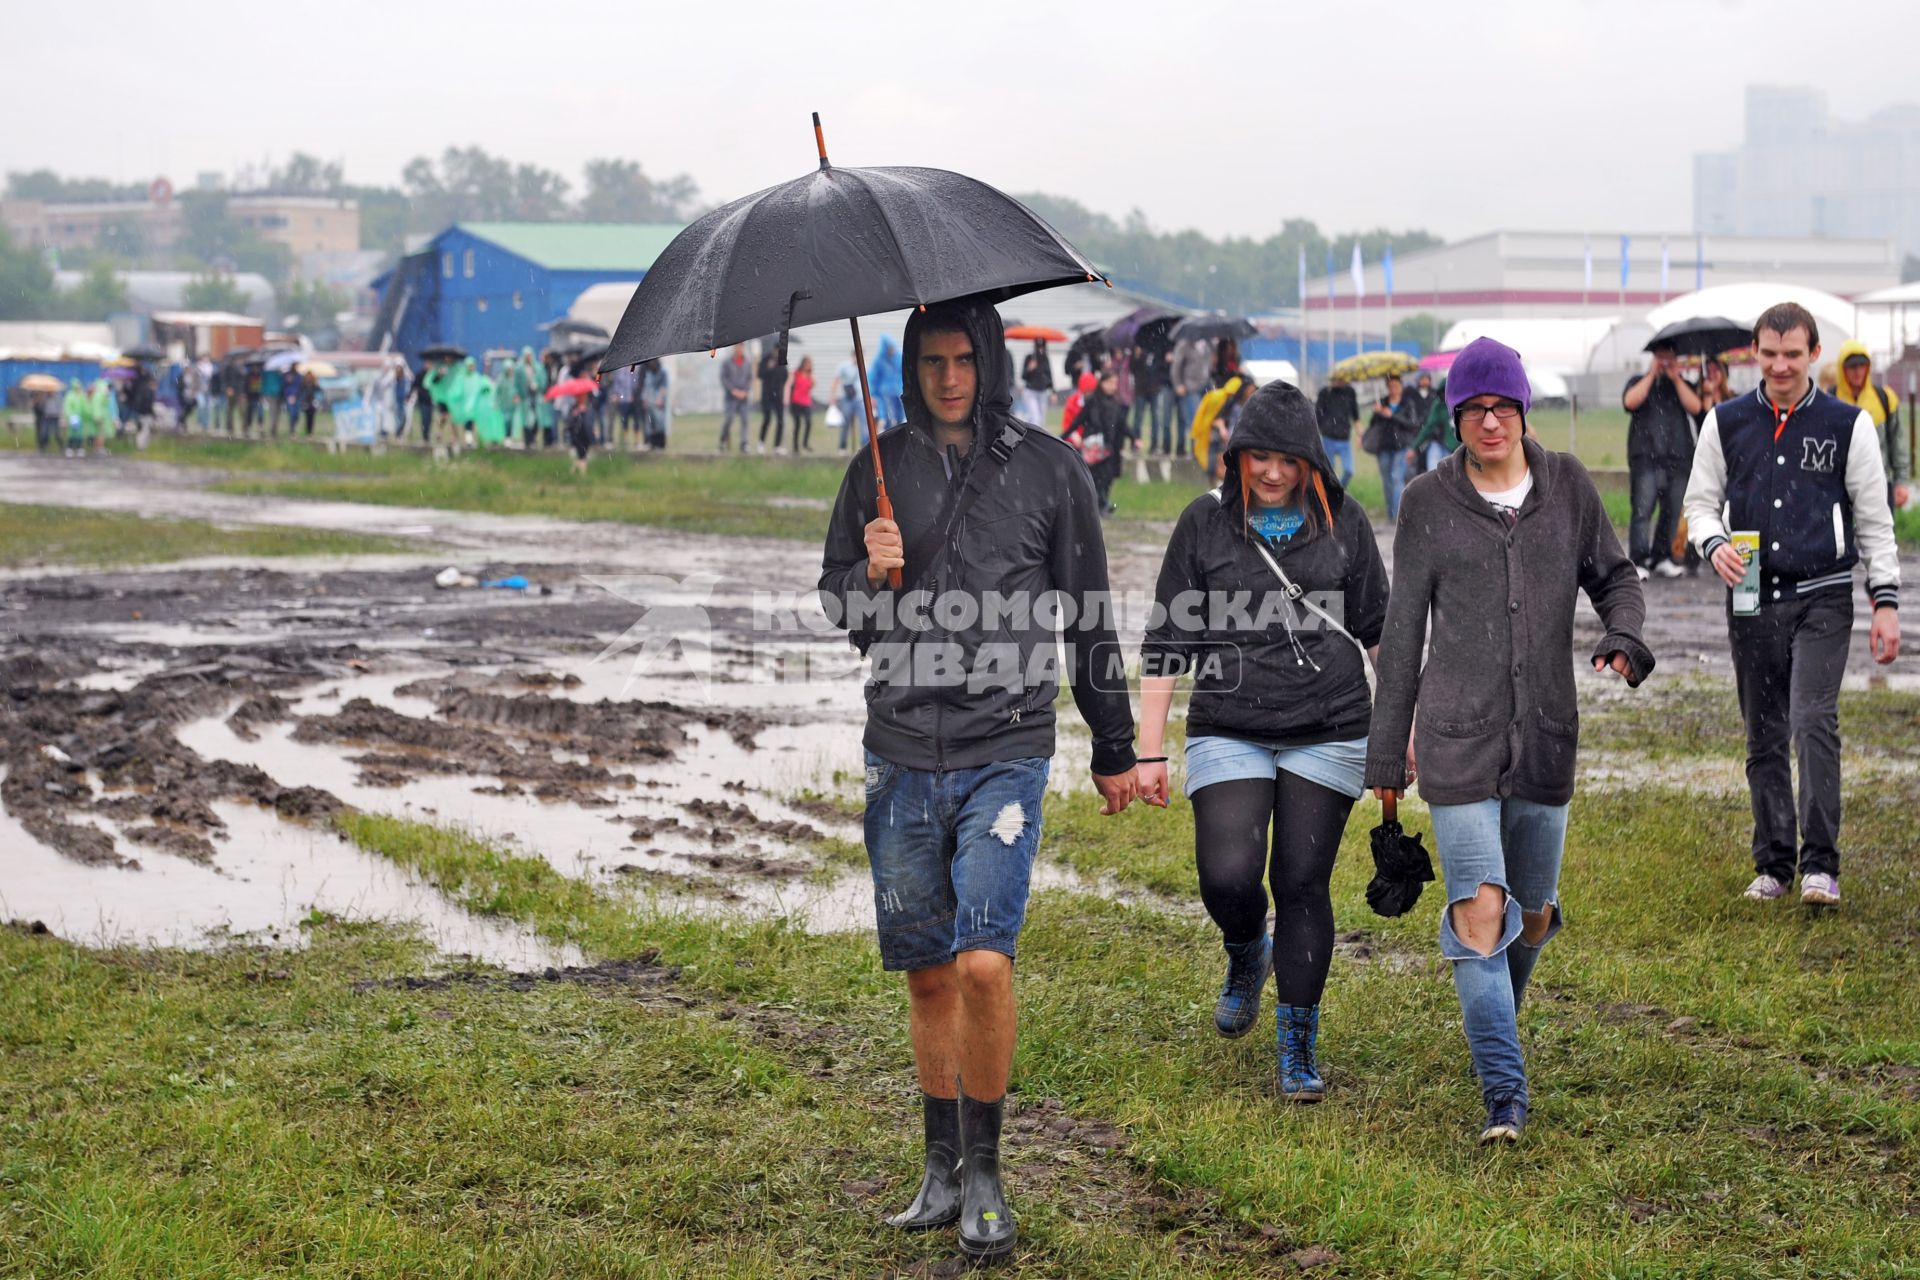 Аэродром `Тушино`. 15-й международный музыкальный фестиваль `Maxidrom`. Люди с зонтами пробираются по грязи.